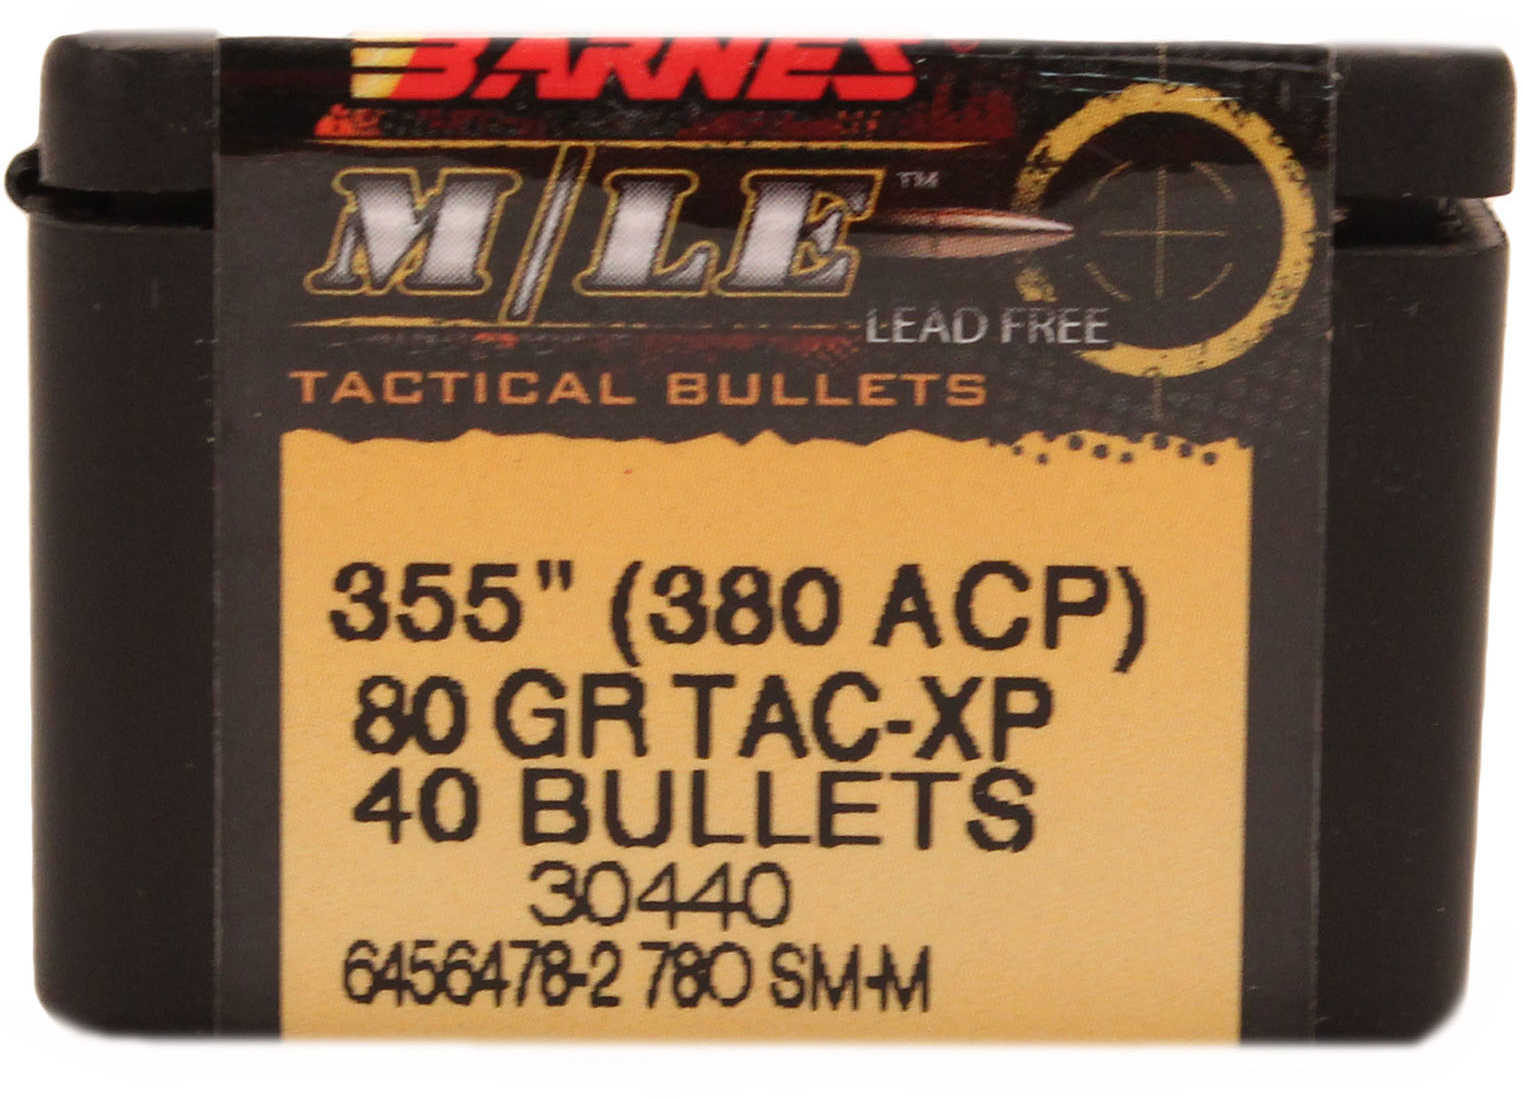 Barnes M/LE TAC-XP Pistol Bullets .380 ACP .355" 80 Gr FB HP 40/ct